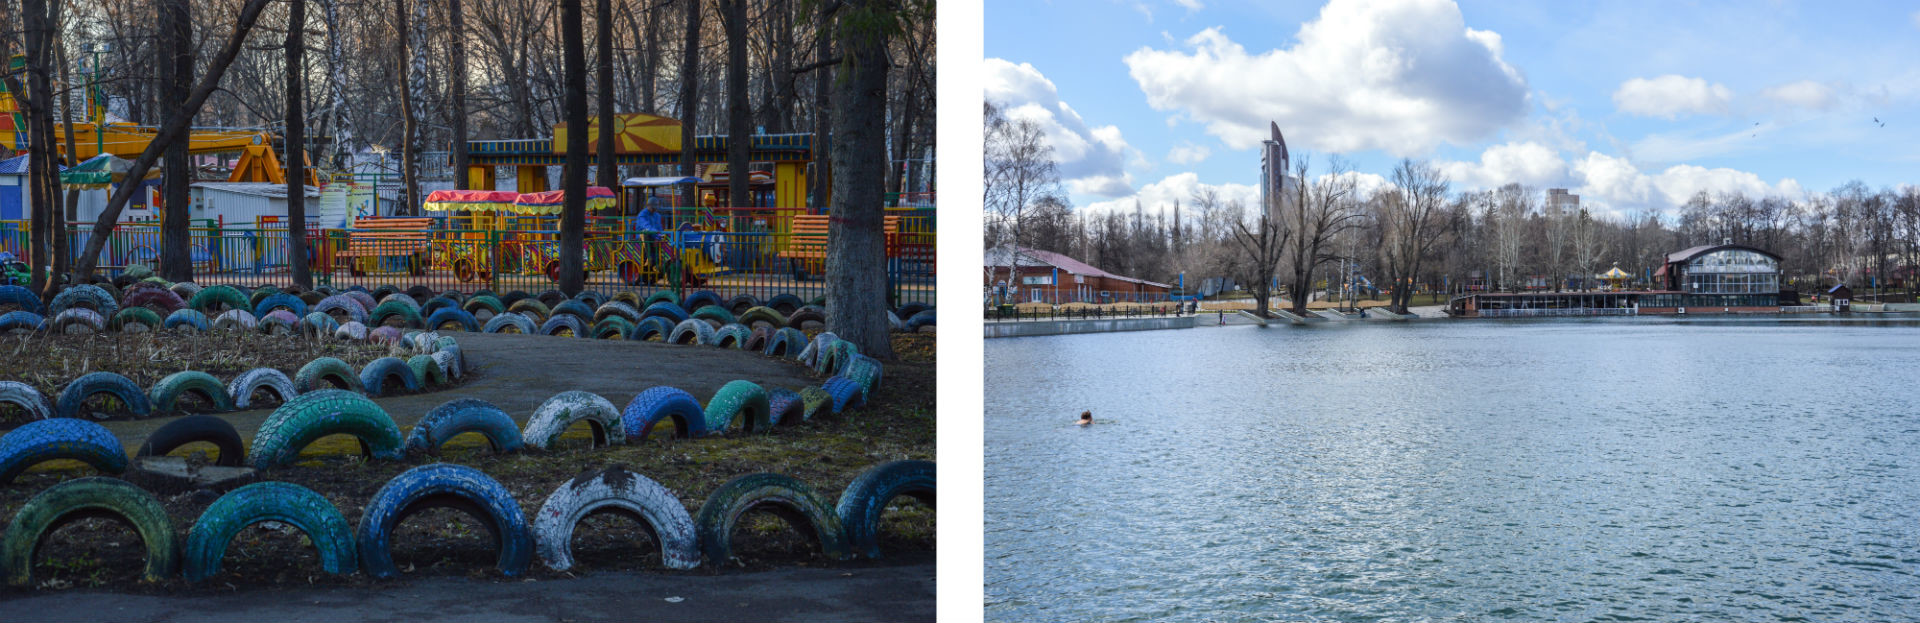 Le parc Iakoutov est un lieu idéal de détente, offrant de nombreuses distractions pour petits et grands.